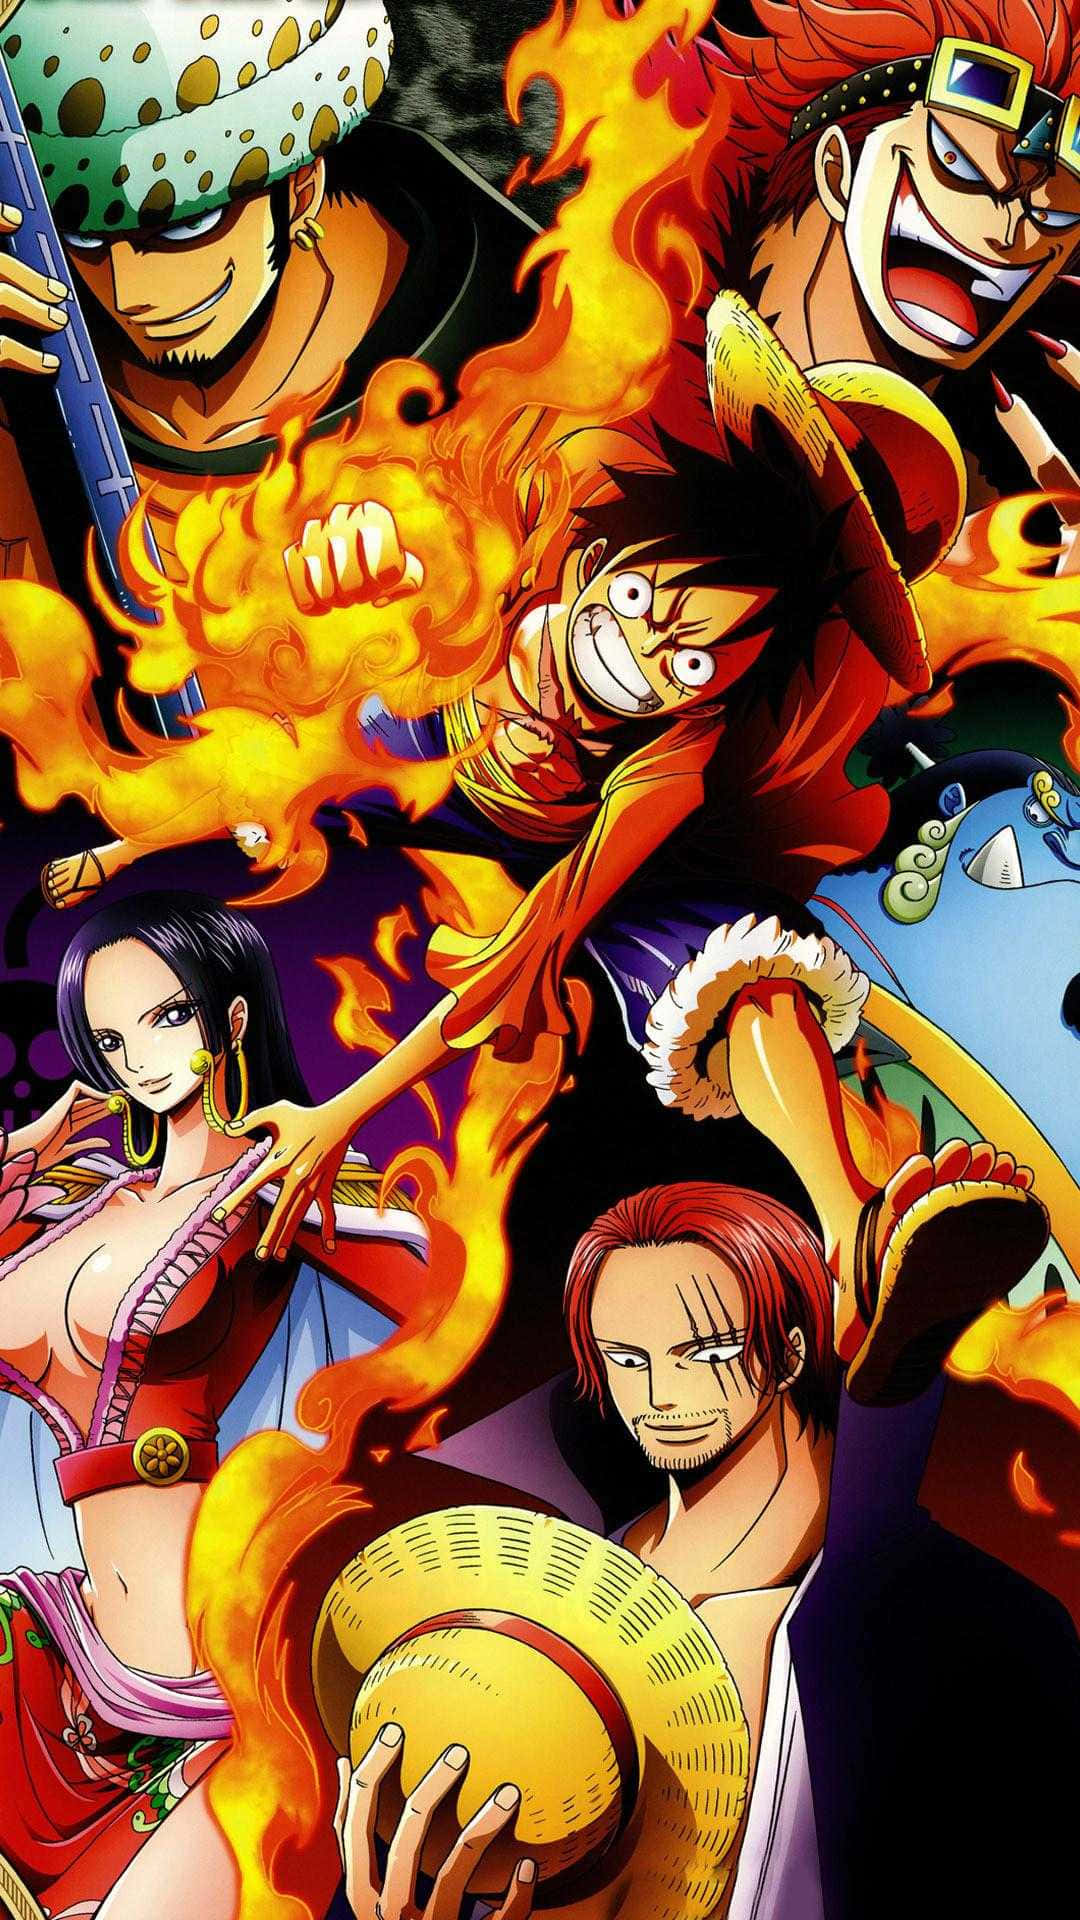 Immaginedel Poster Del Personaggio Di One Piece